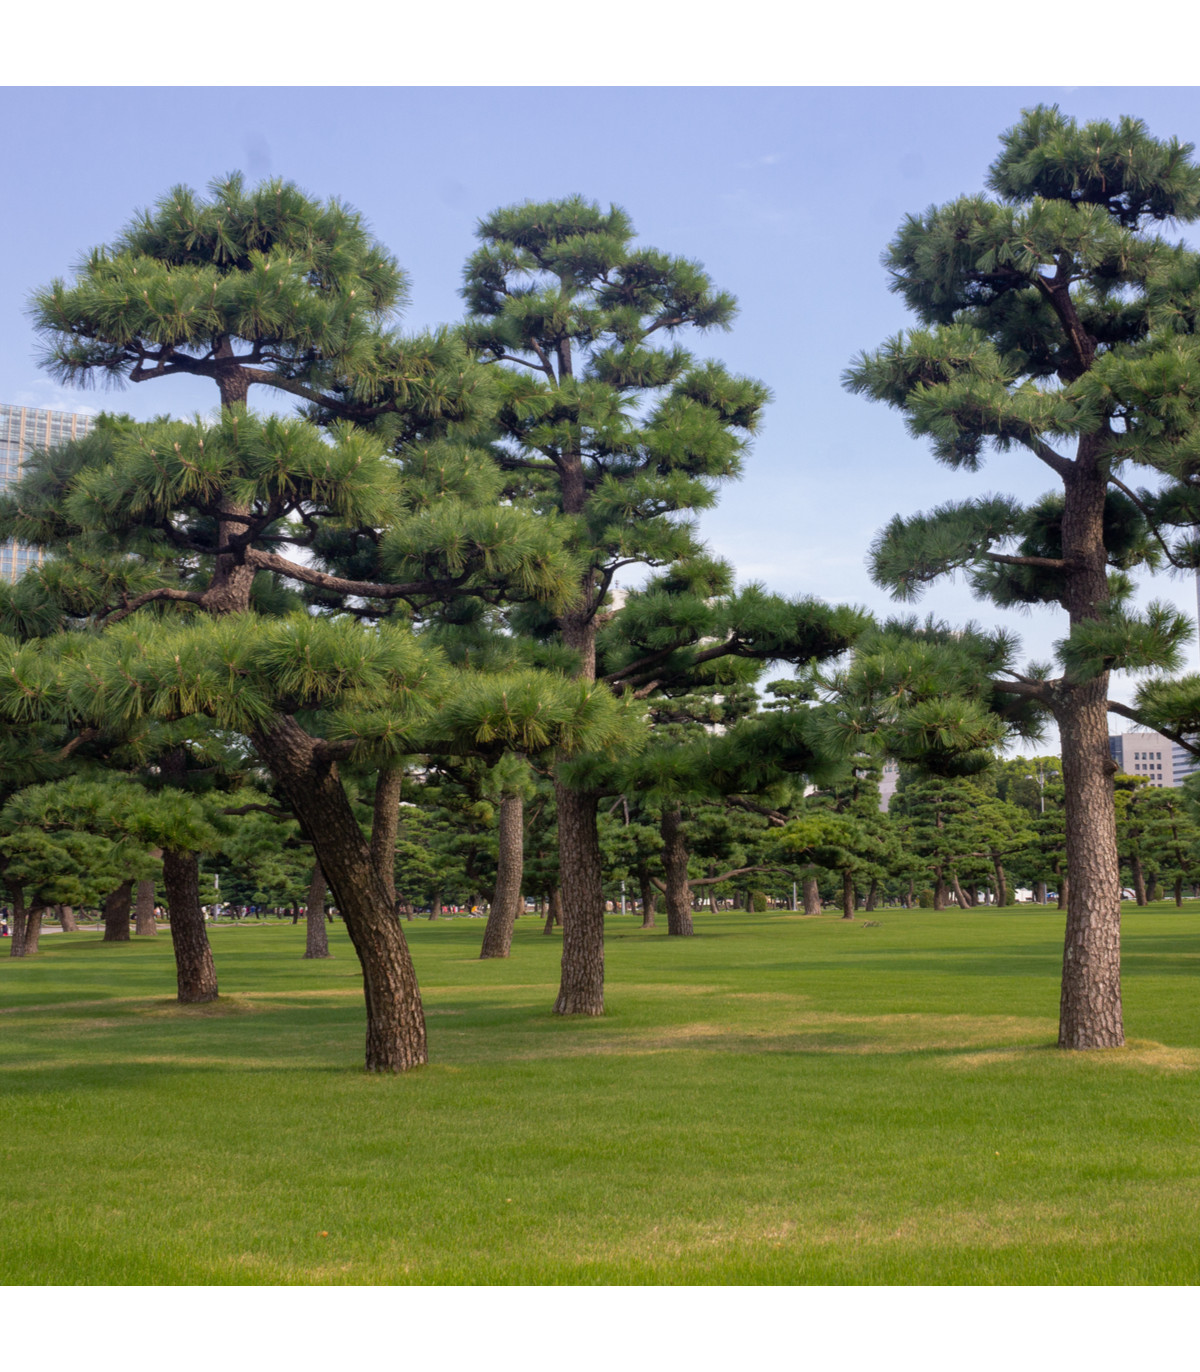 Borovice japonská černá - Pinus thunbergii - osivo borovice - 5 ks